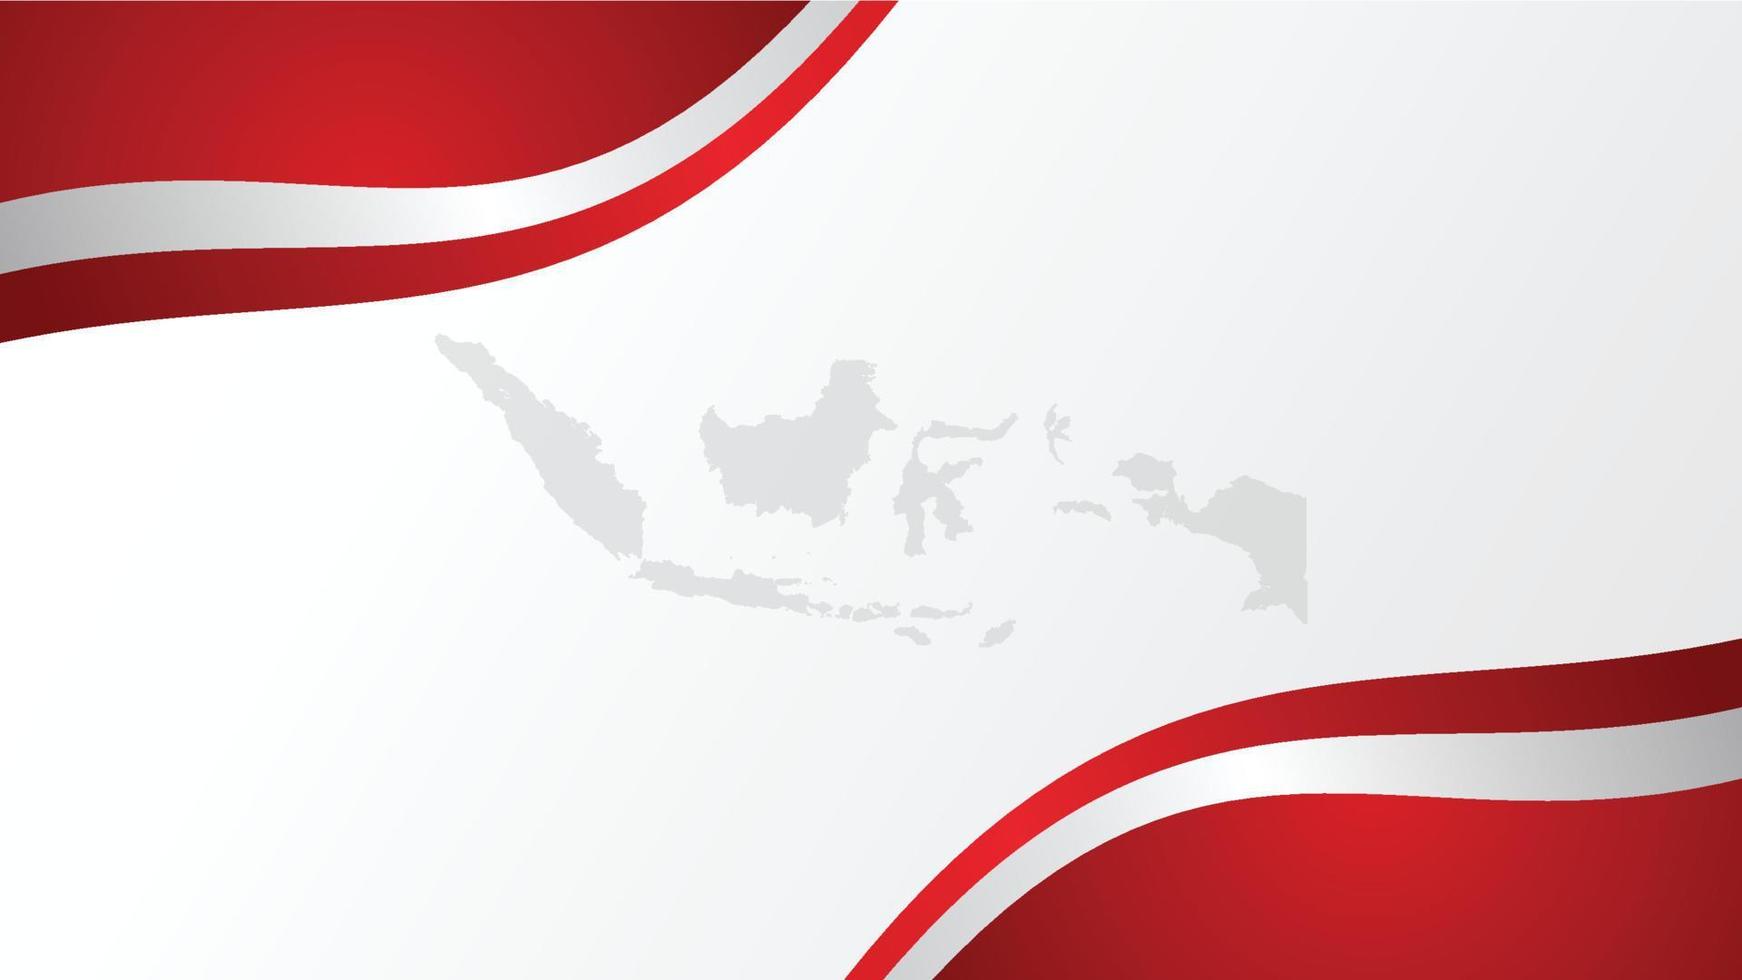 Background bendera merah putih indonesia vector